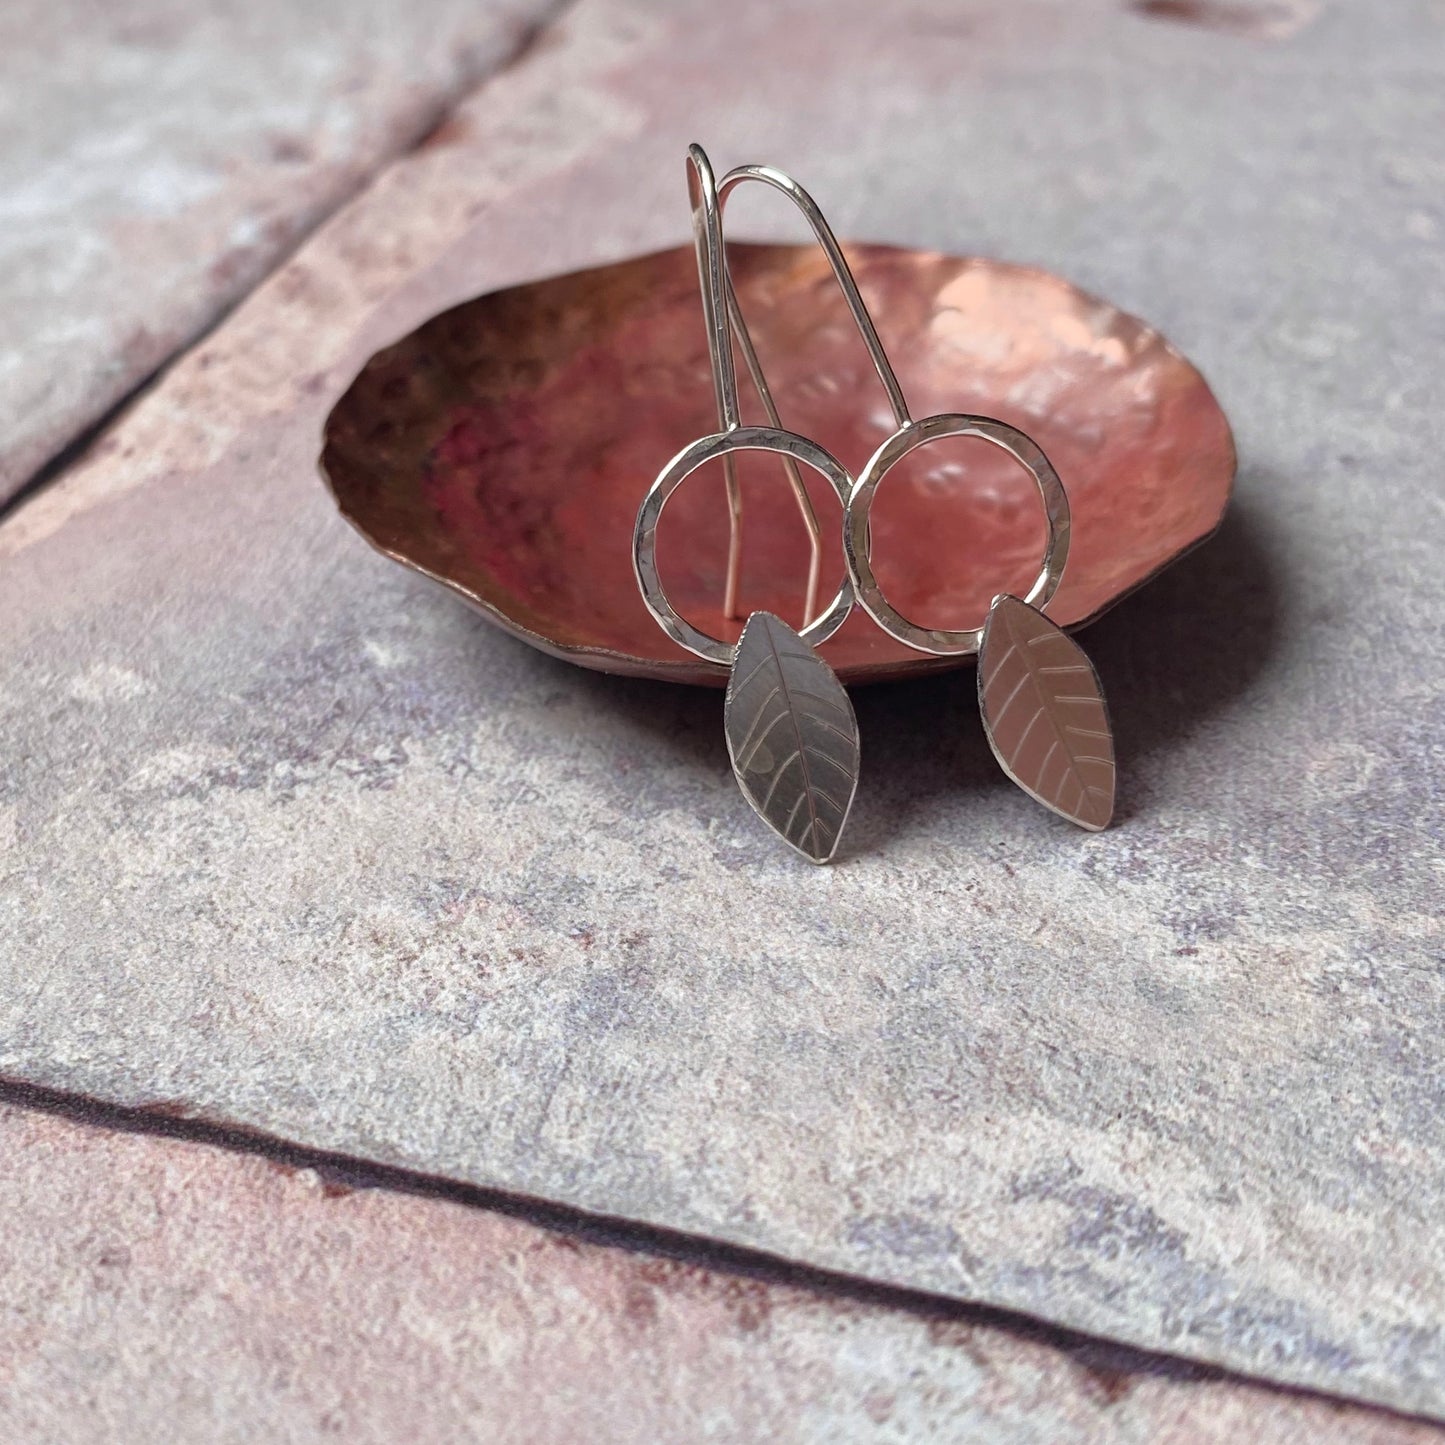 Silver leaf earrings